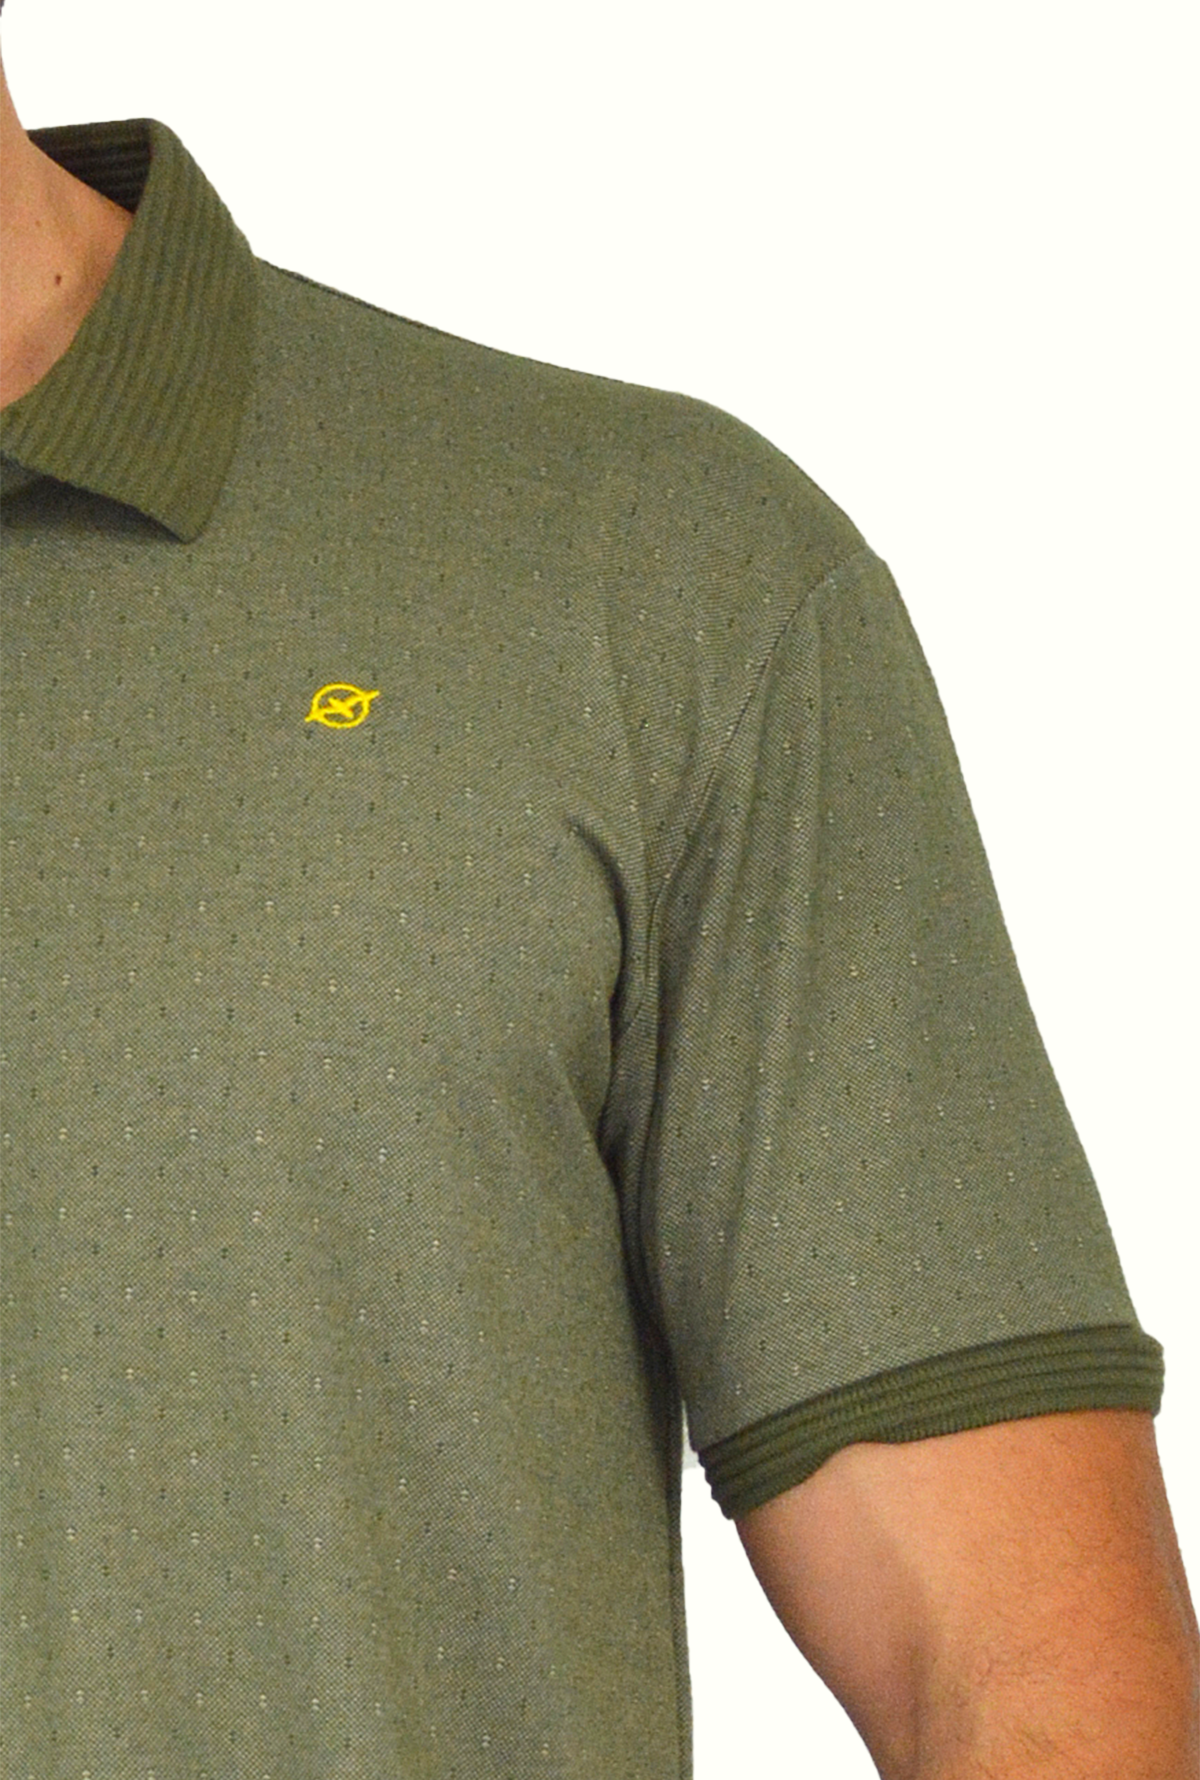 Camiseta de Hombre Tipo Polo con Tejido brasileño verde Para Hombre CP025